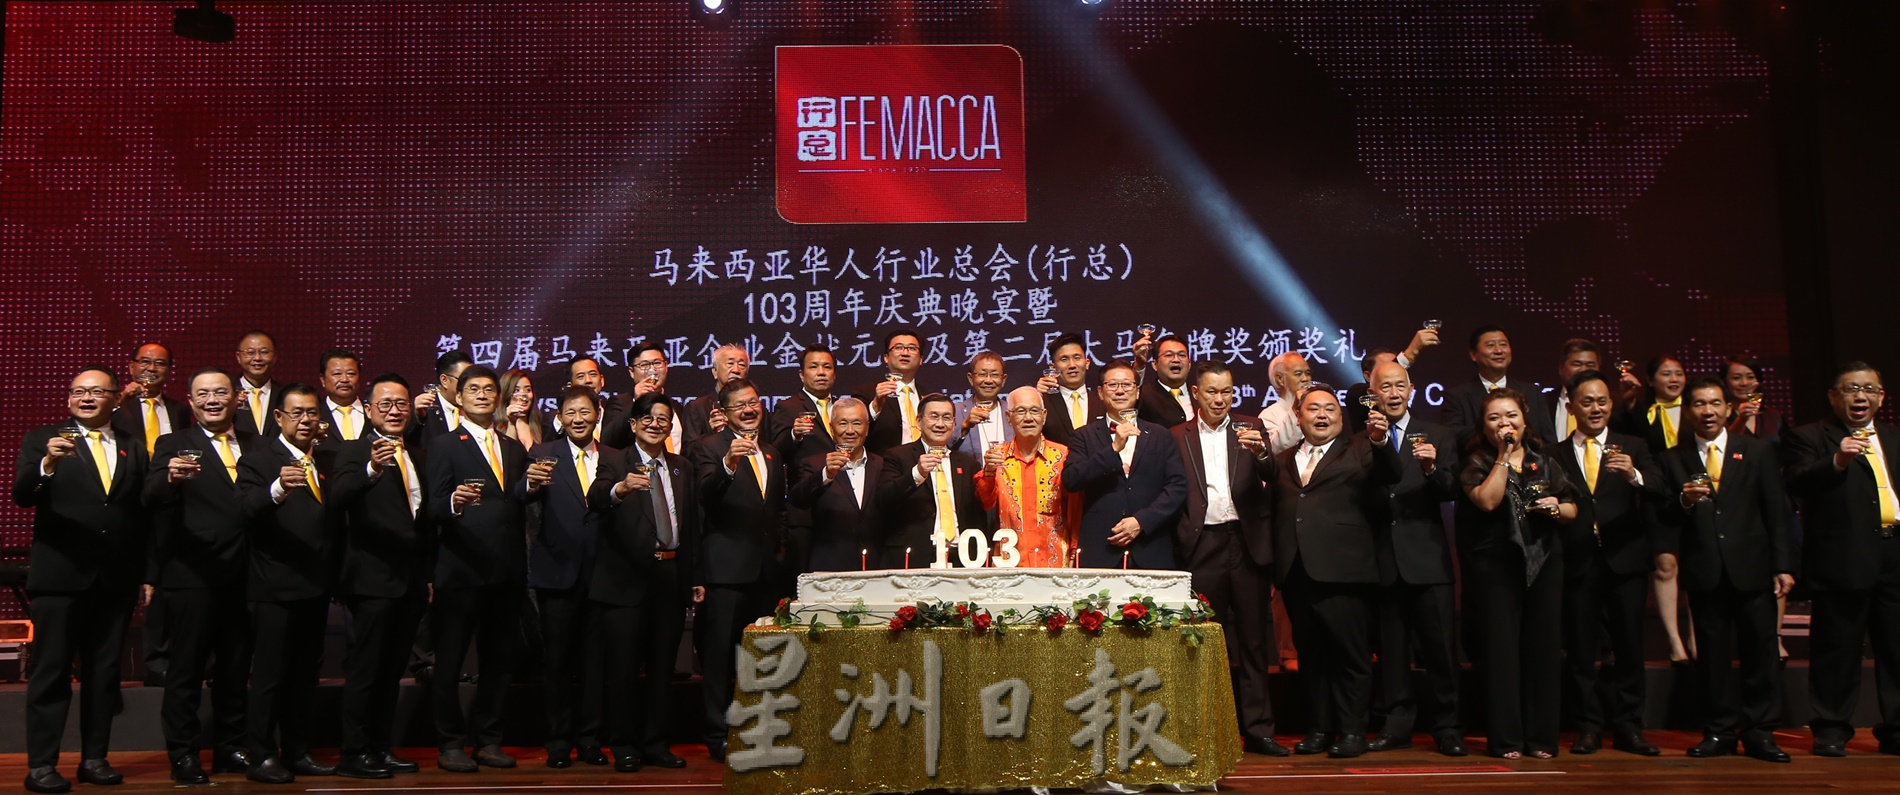 马来西亚华人行业总会103周年晚宴